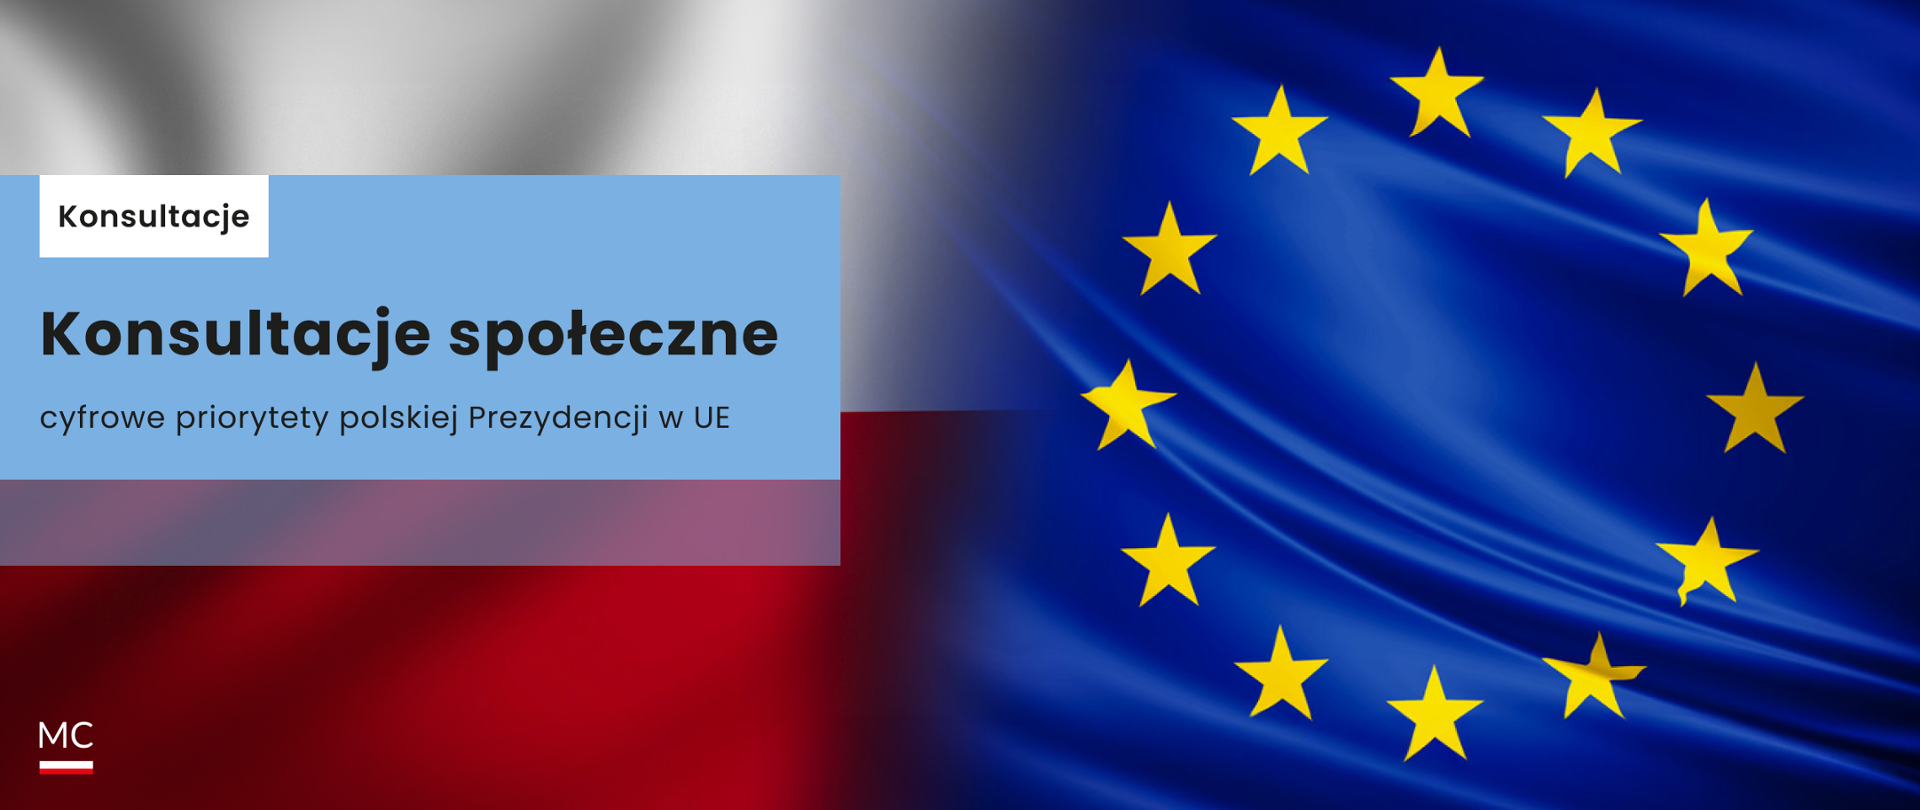 Na grafice po lewej stronie napis: konsultacje społeczne - cyfrowe priorytety polskiej Prezydencji w UE. W tle napisu flaga Polski oraz Unii Europejskiej.